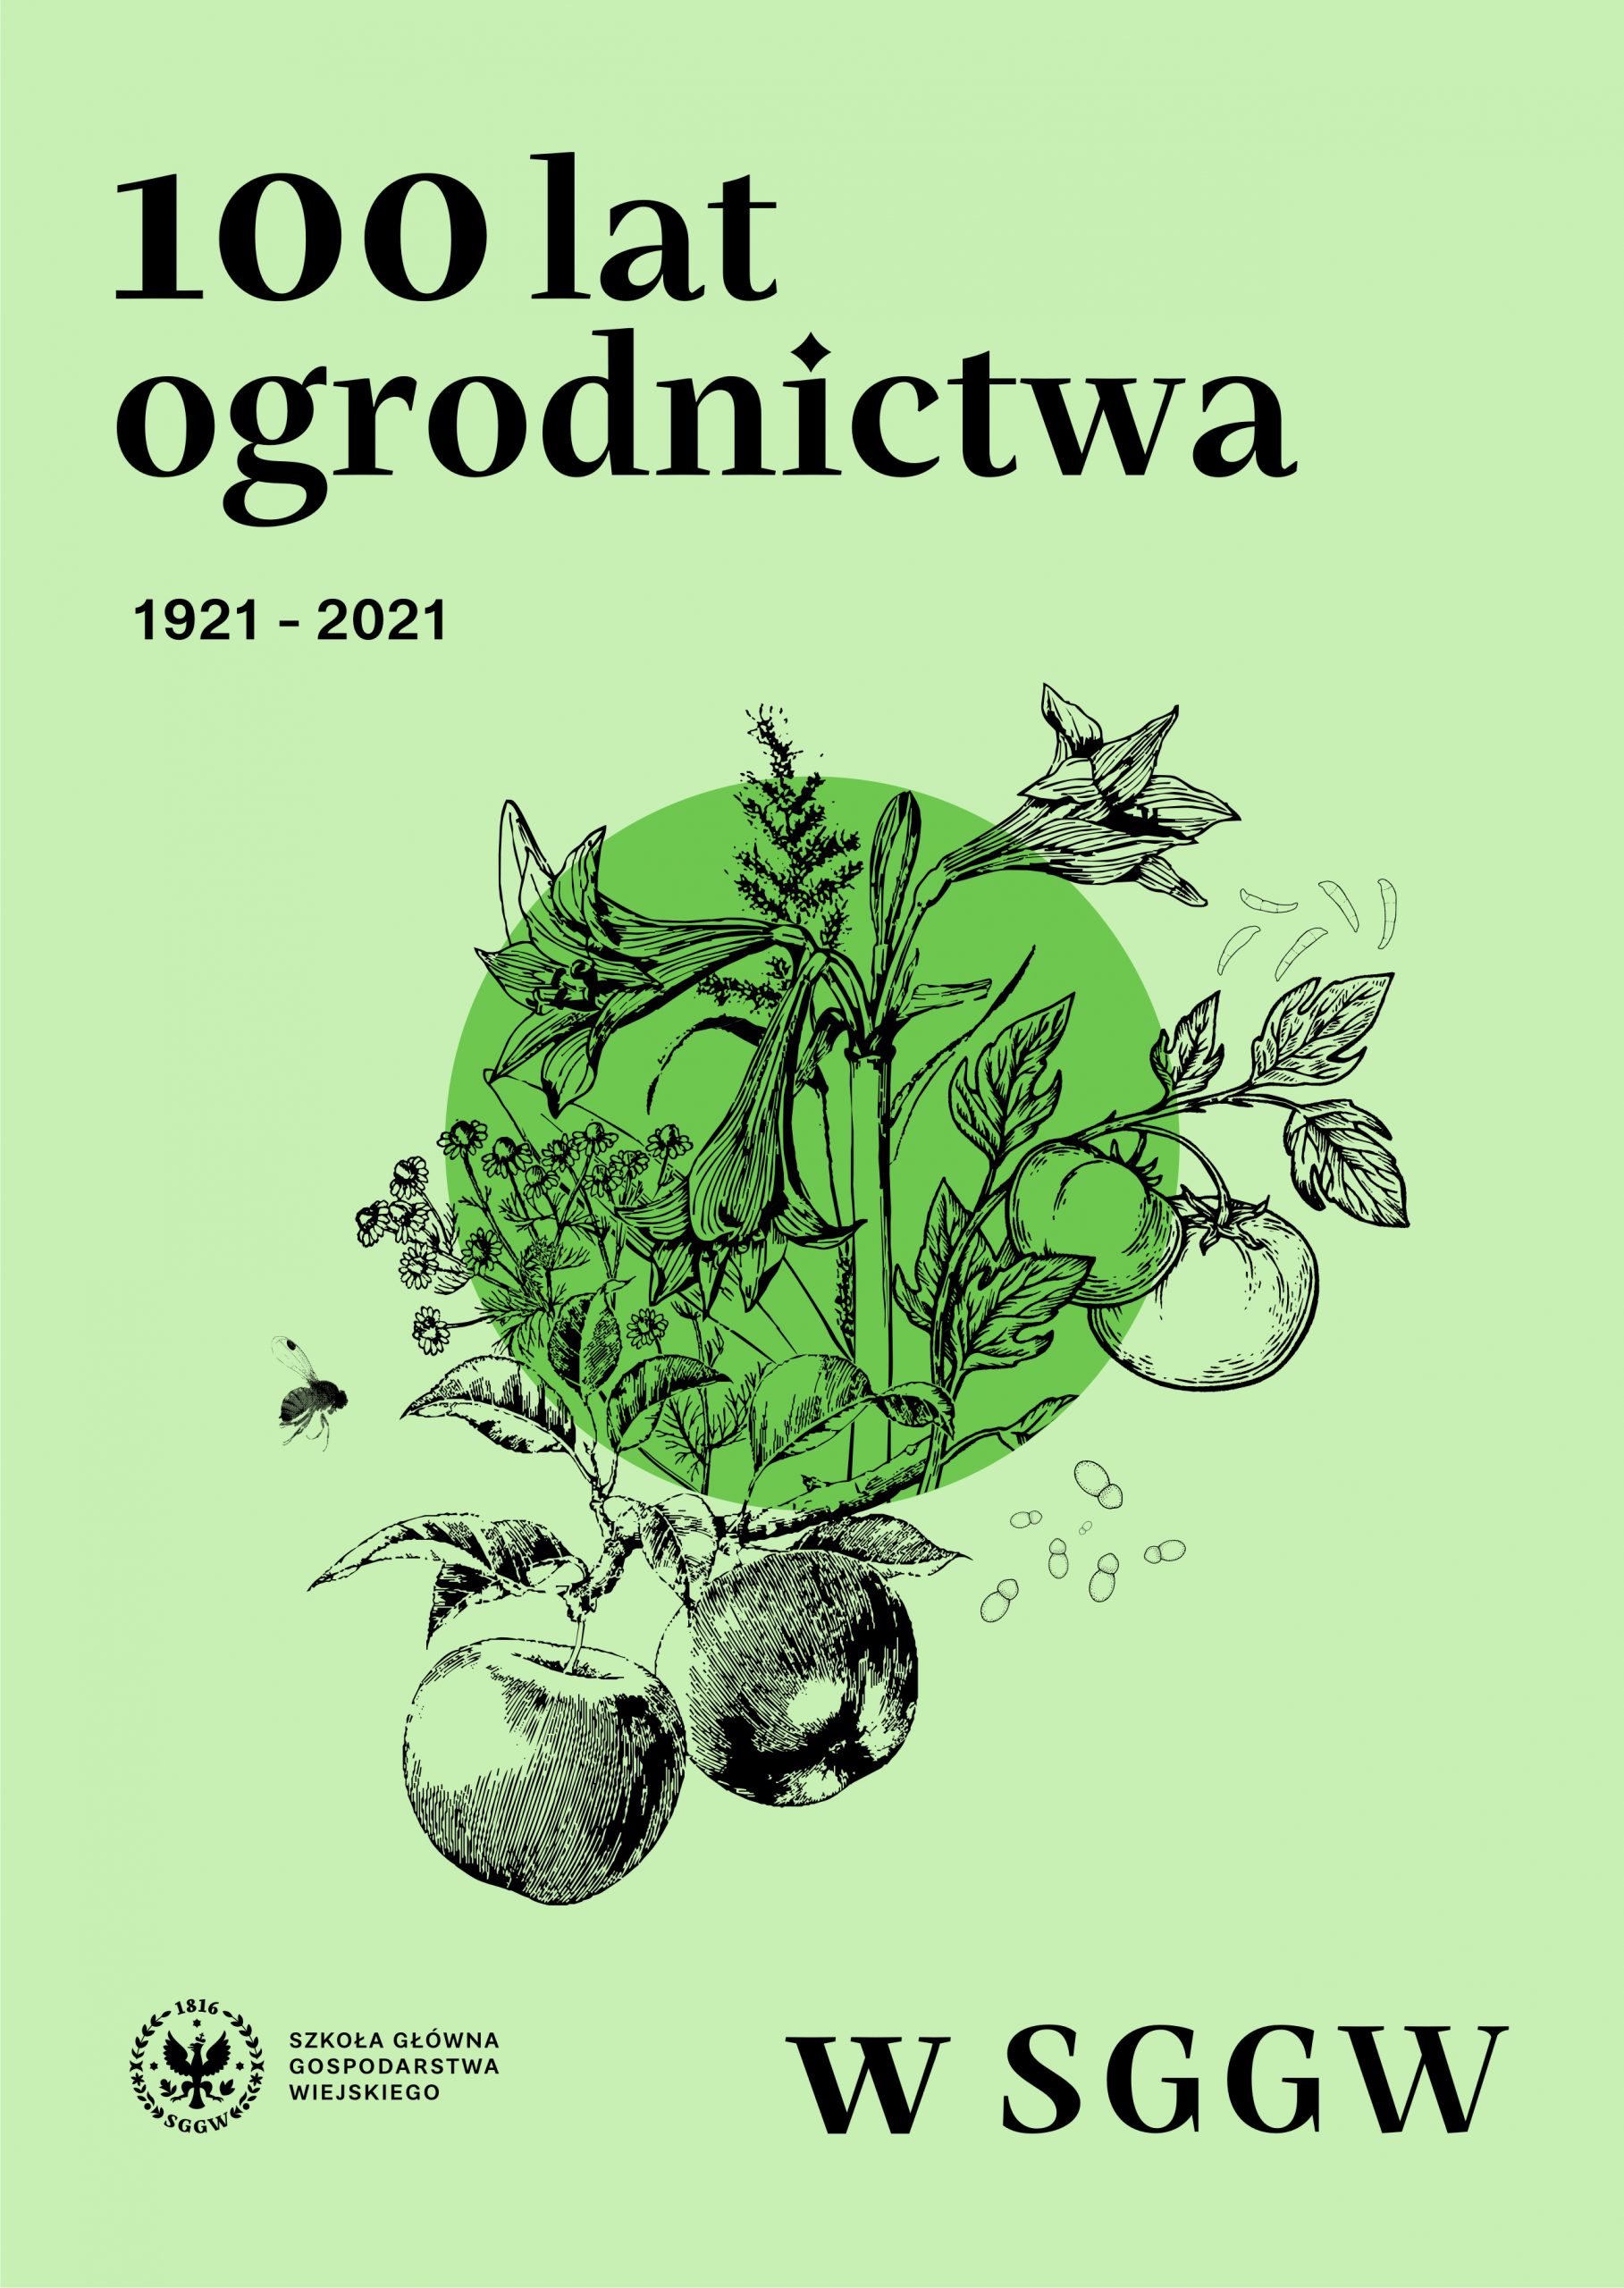 100 lat Ogrodnictwa w SGGW